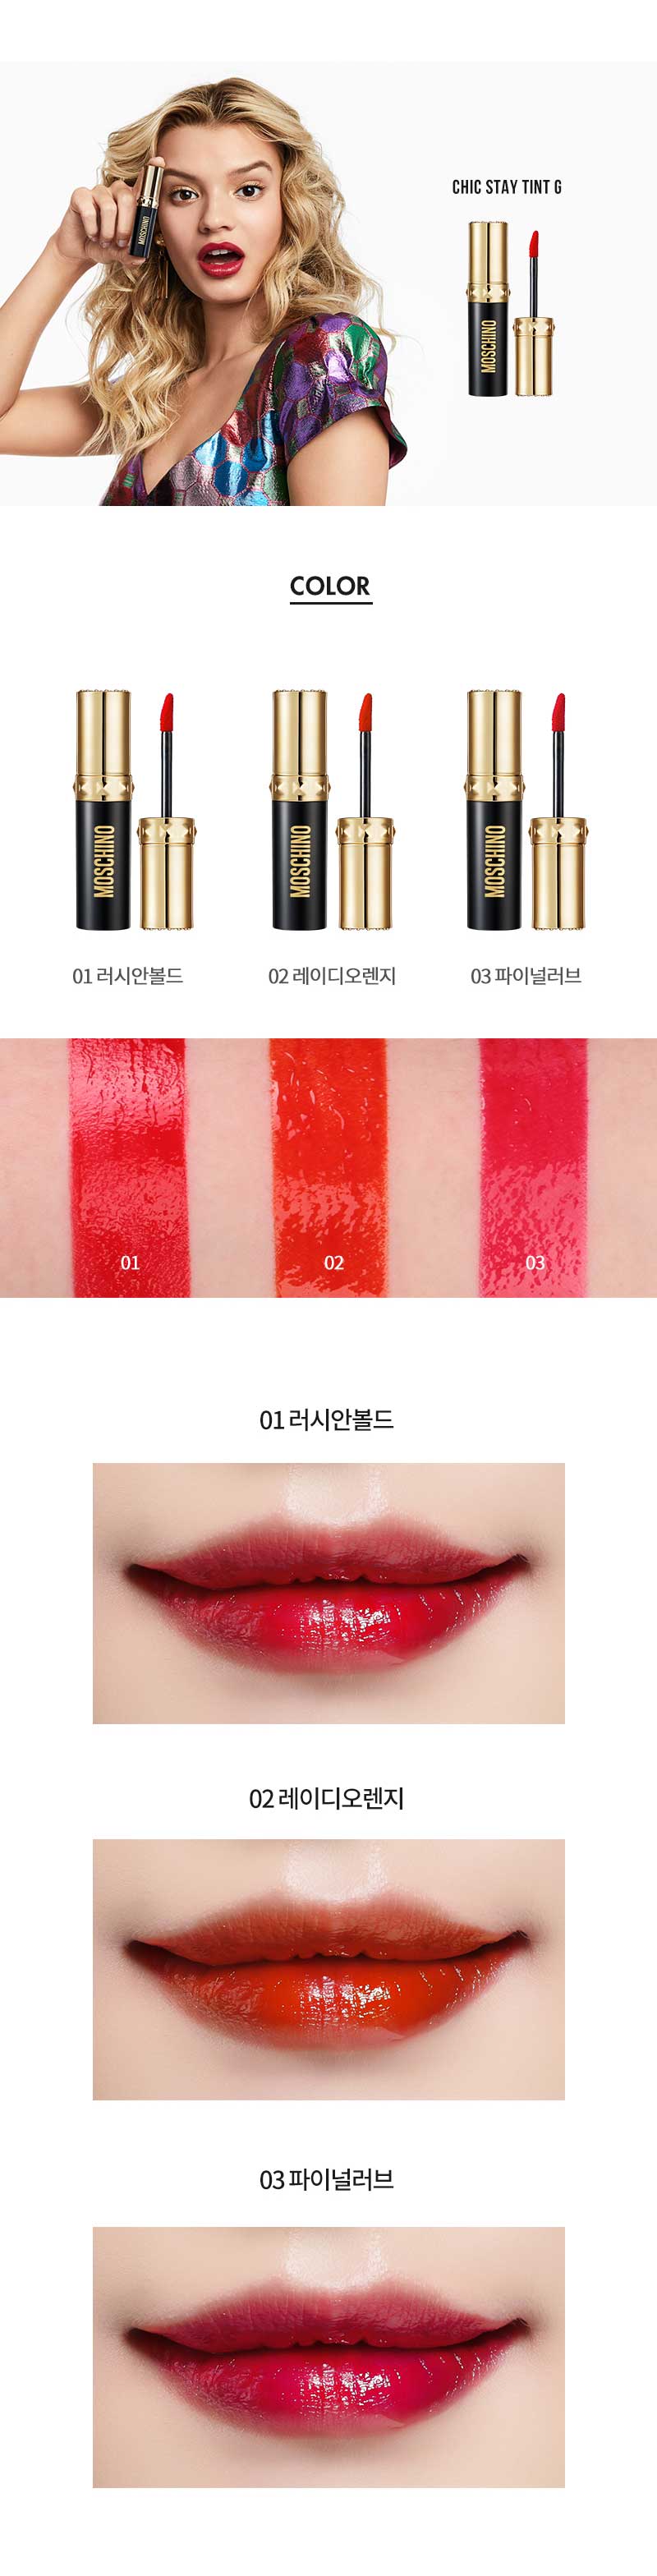 Korean Cosmetics - missBeautyKorea 